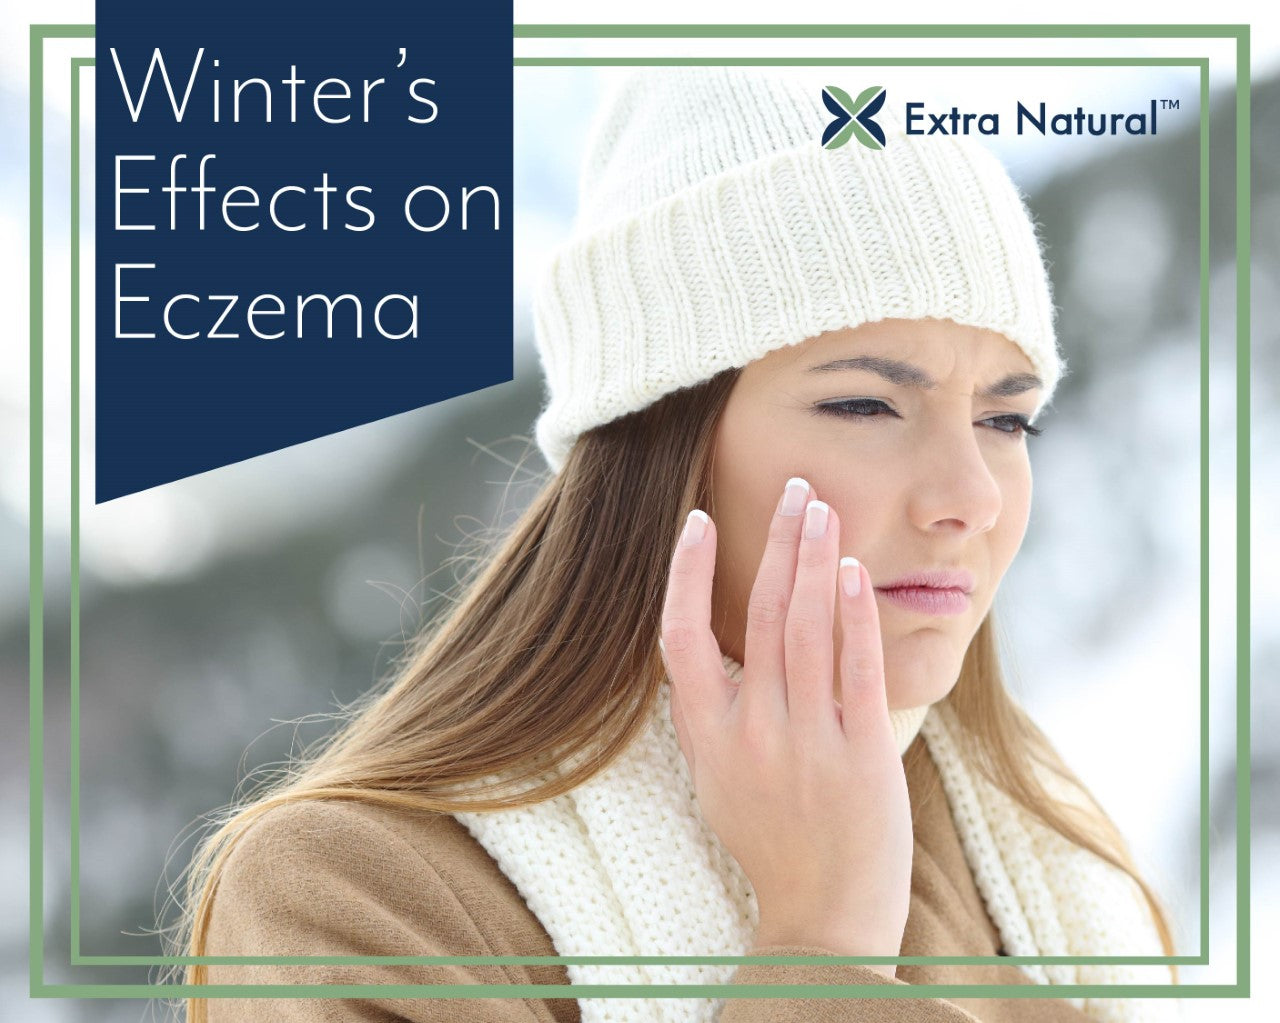 Winter’s Effects on Eczema